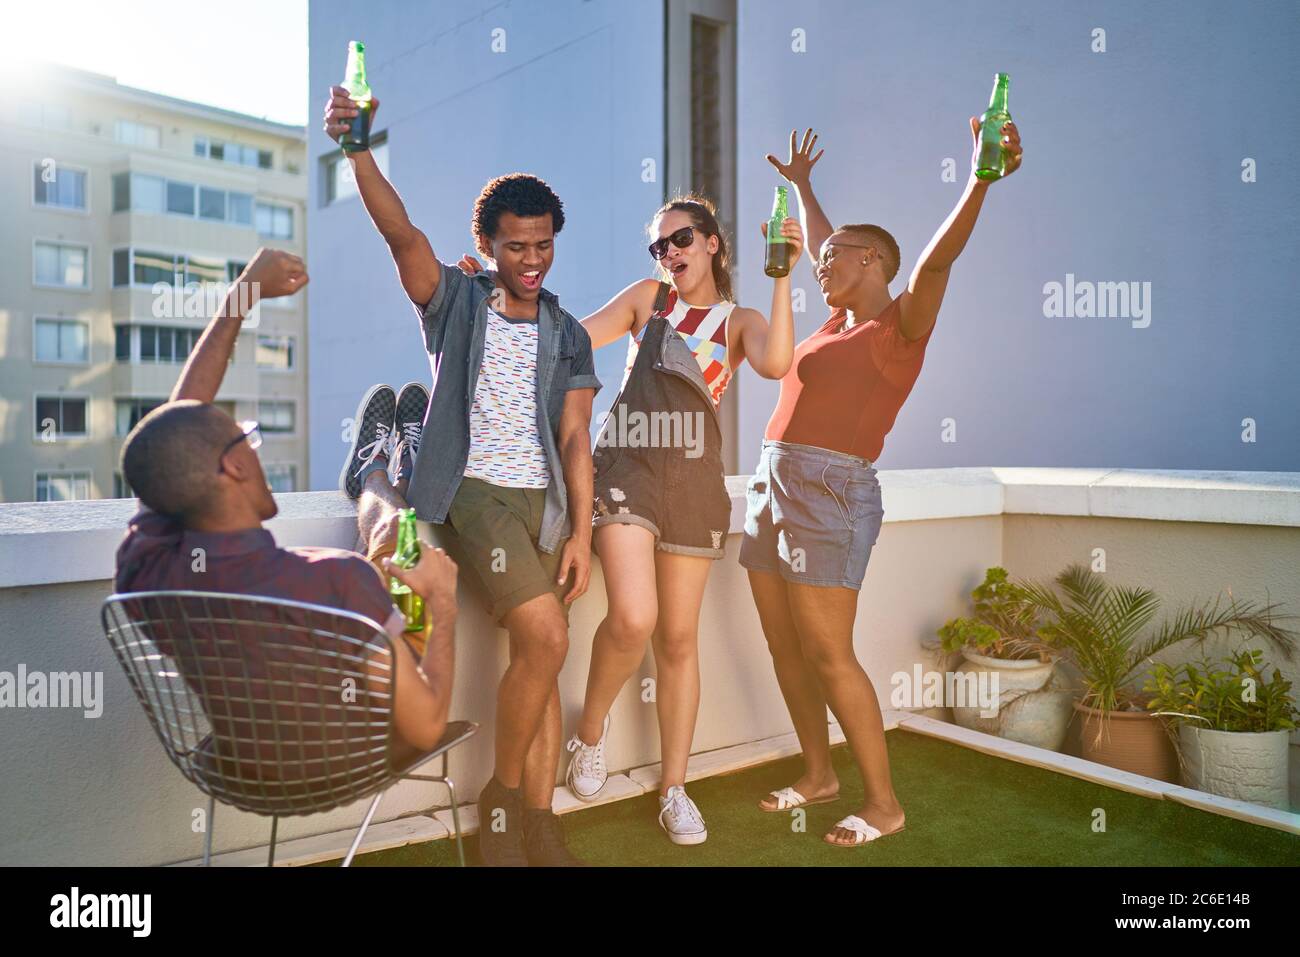 De jeunes amis heureux applaudissent et boivent de la bière sur le toit urbain Banque D'Images